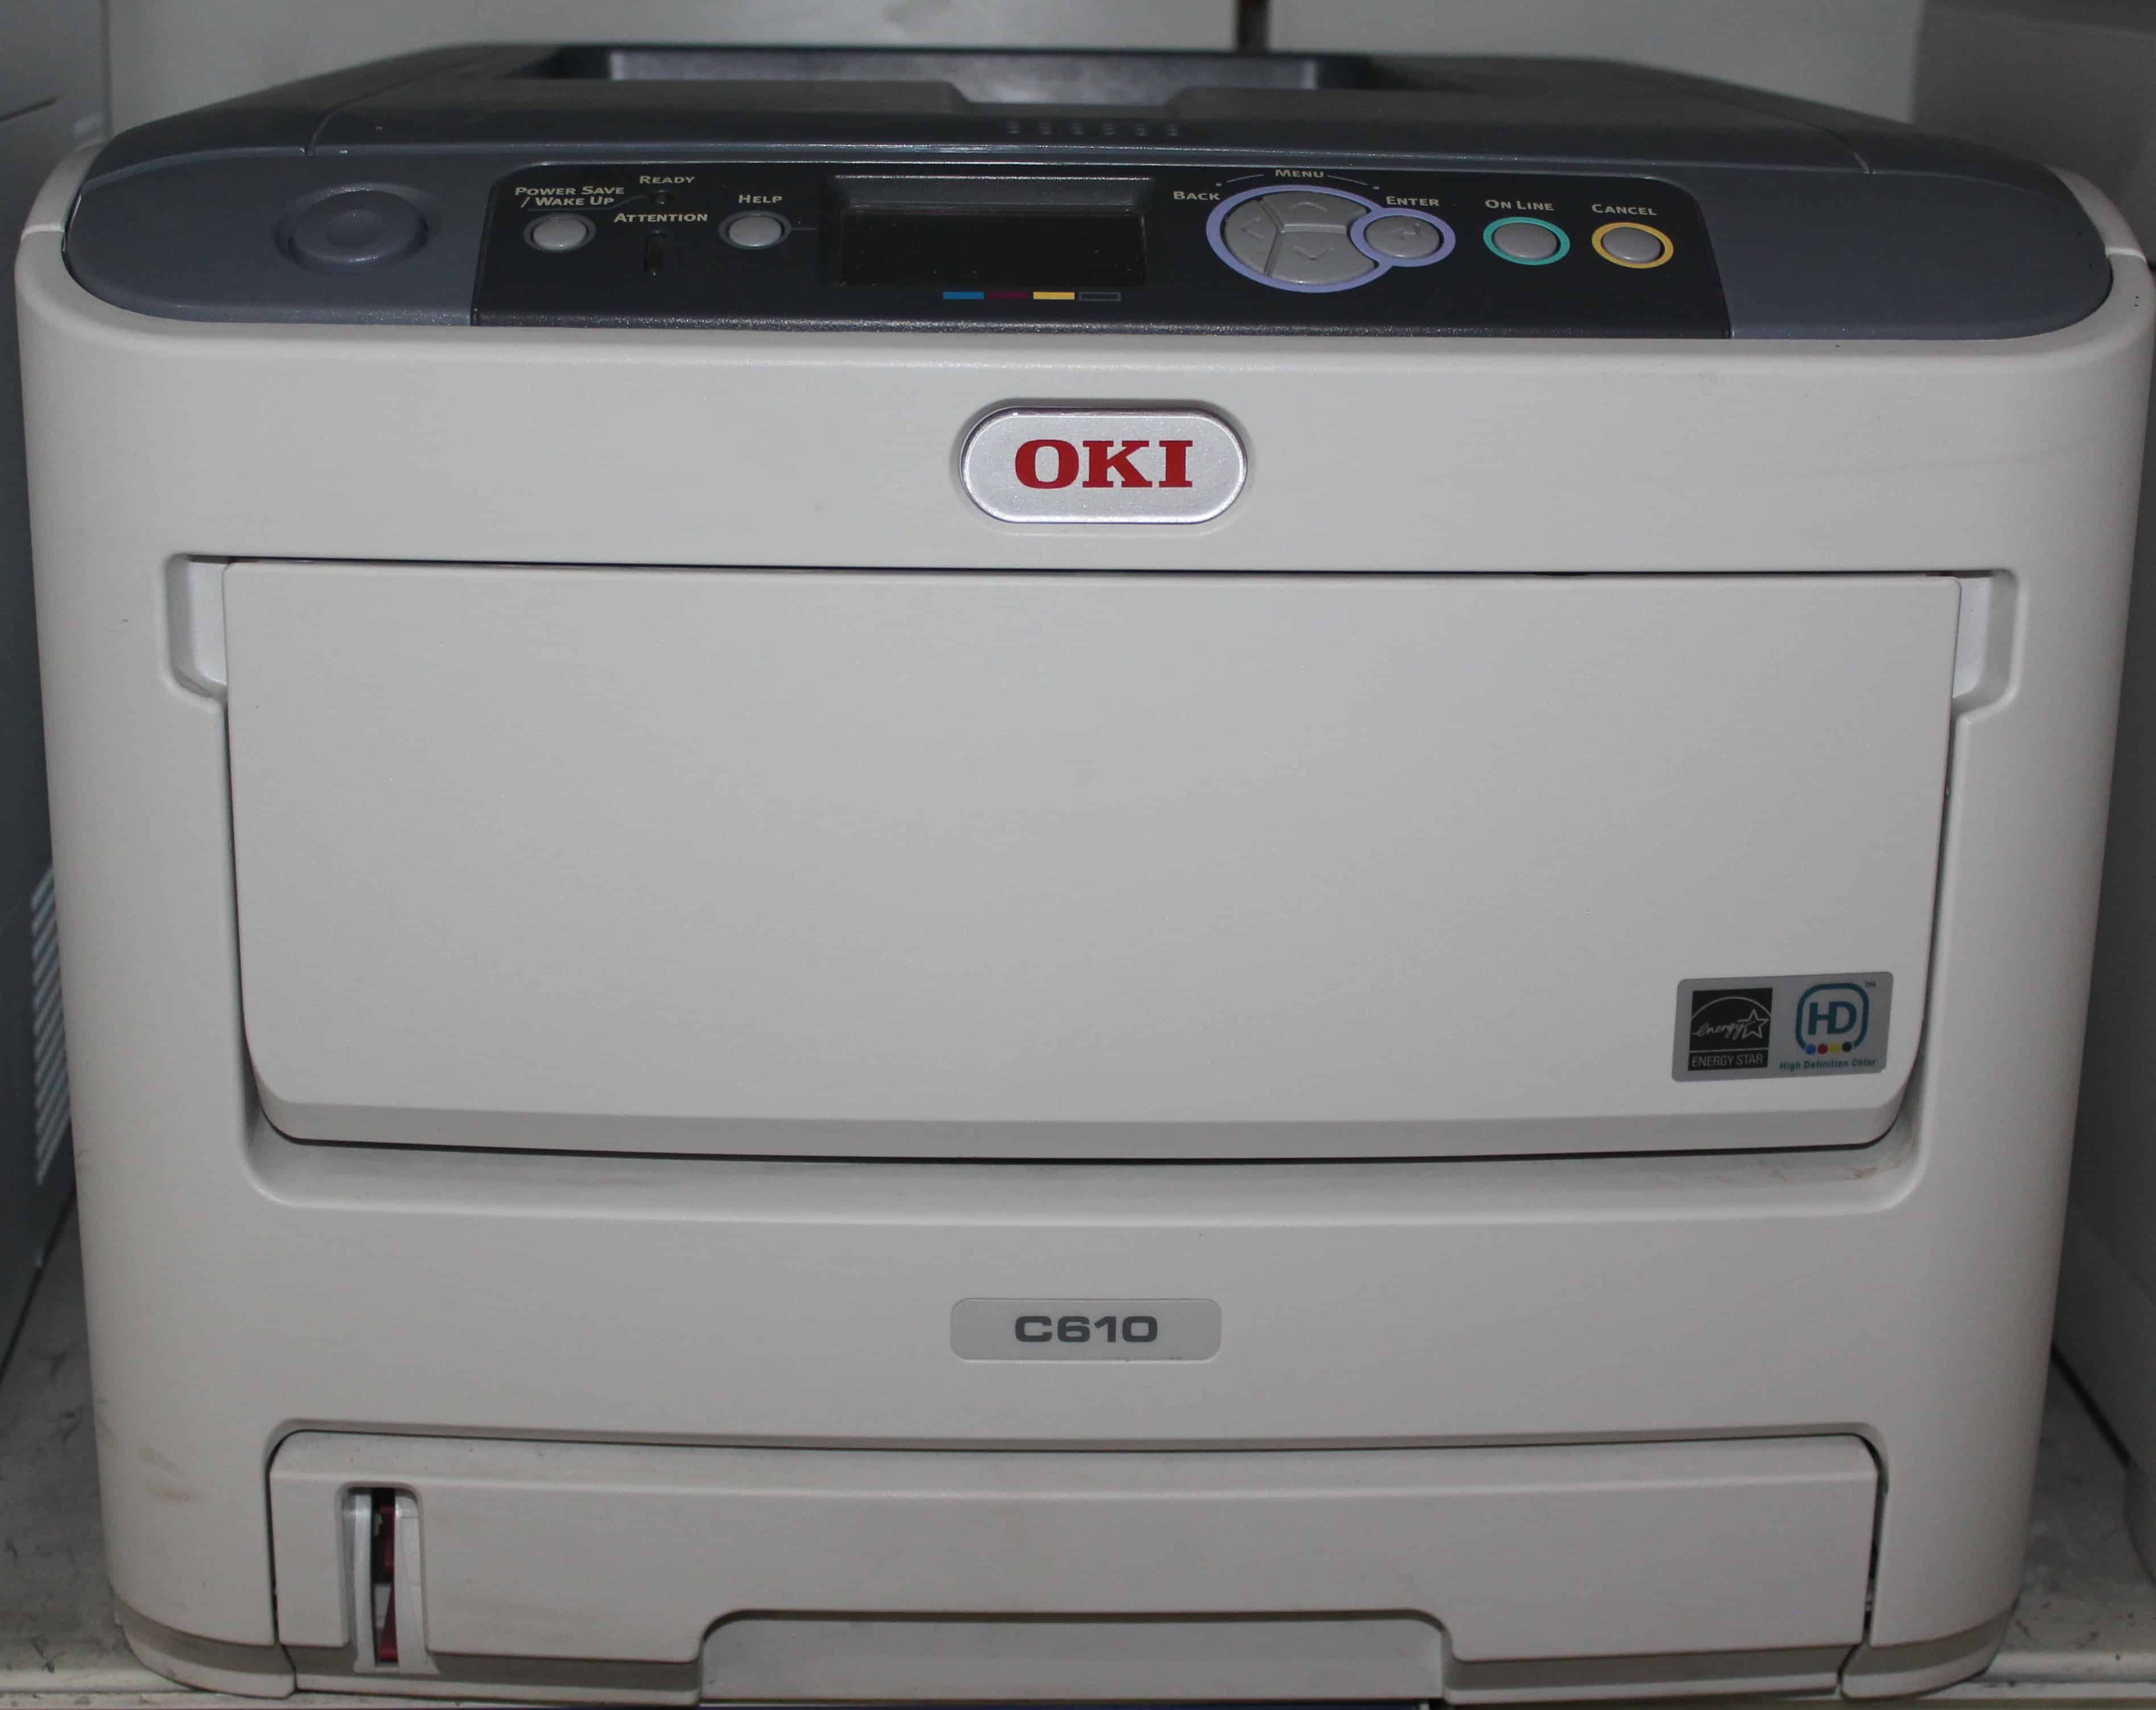 OKI C-610-image